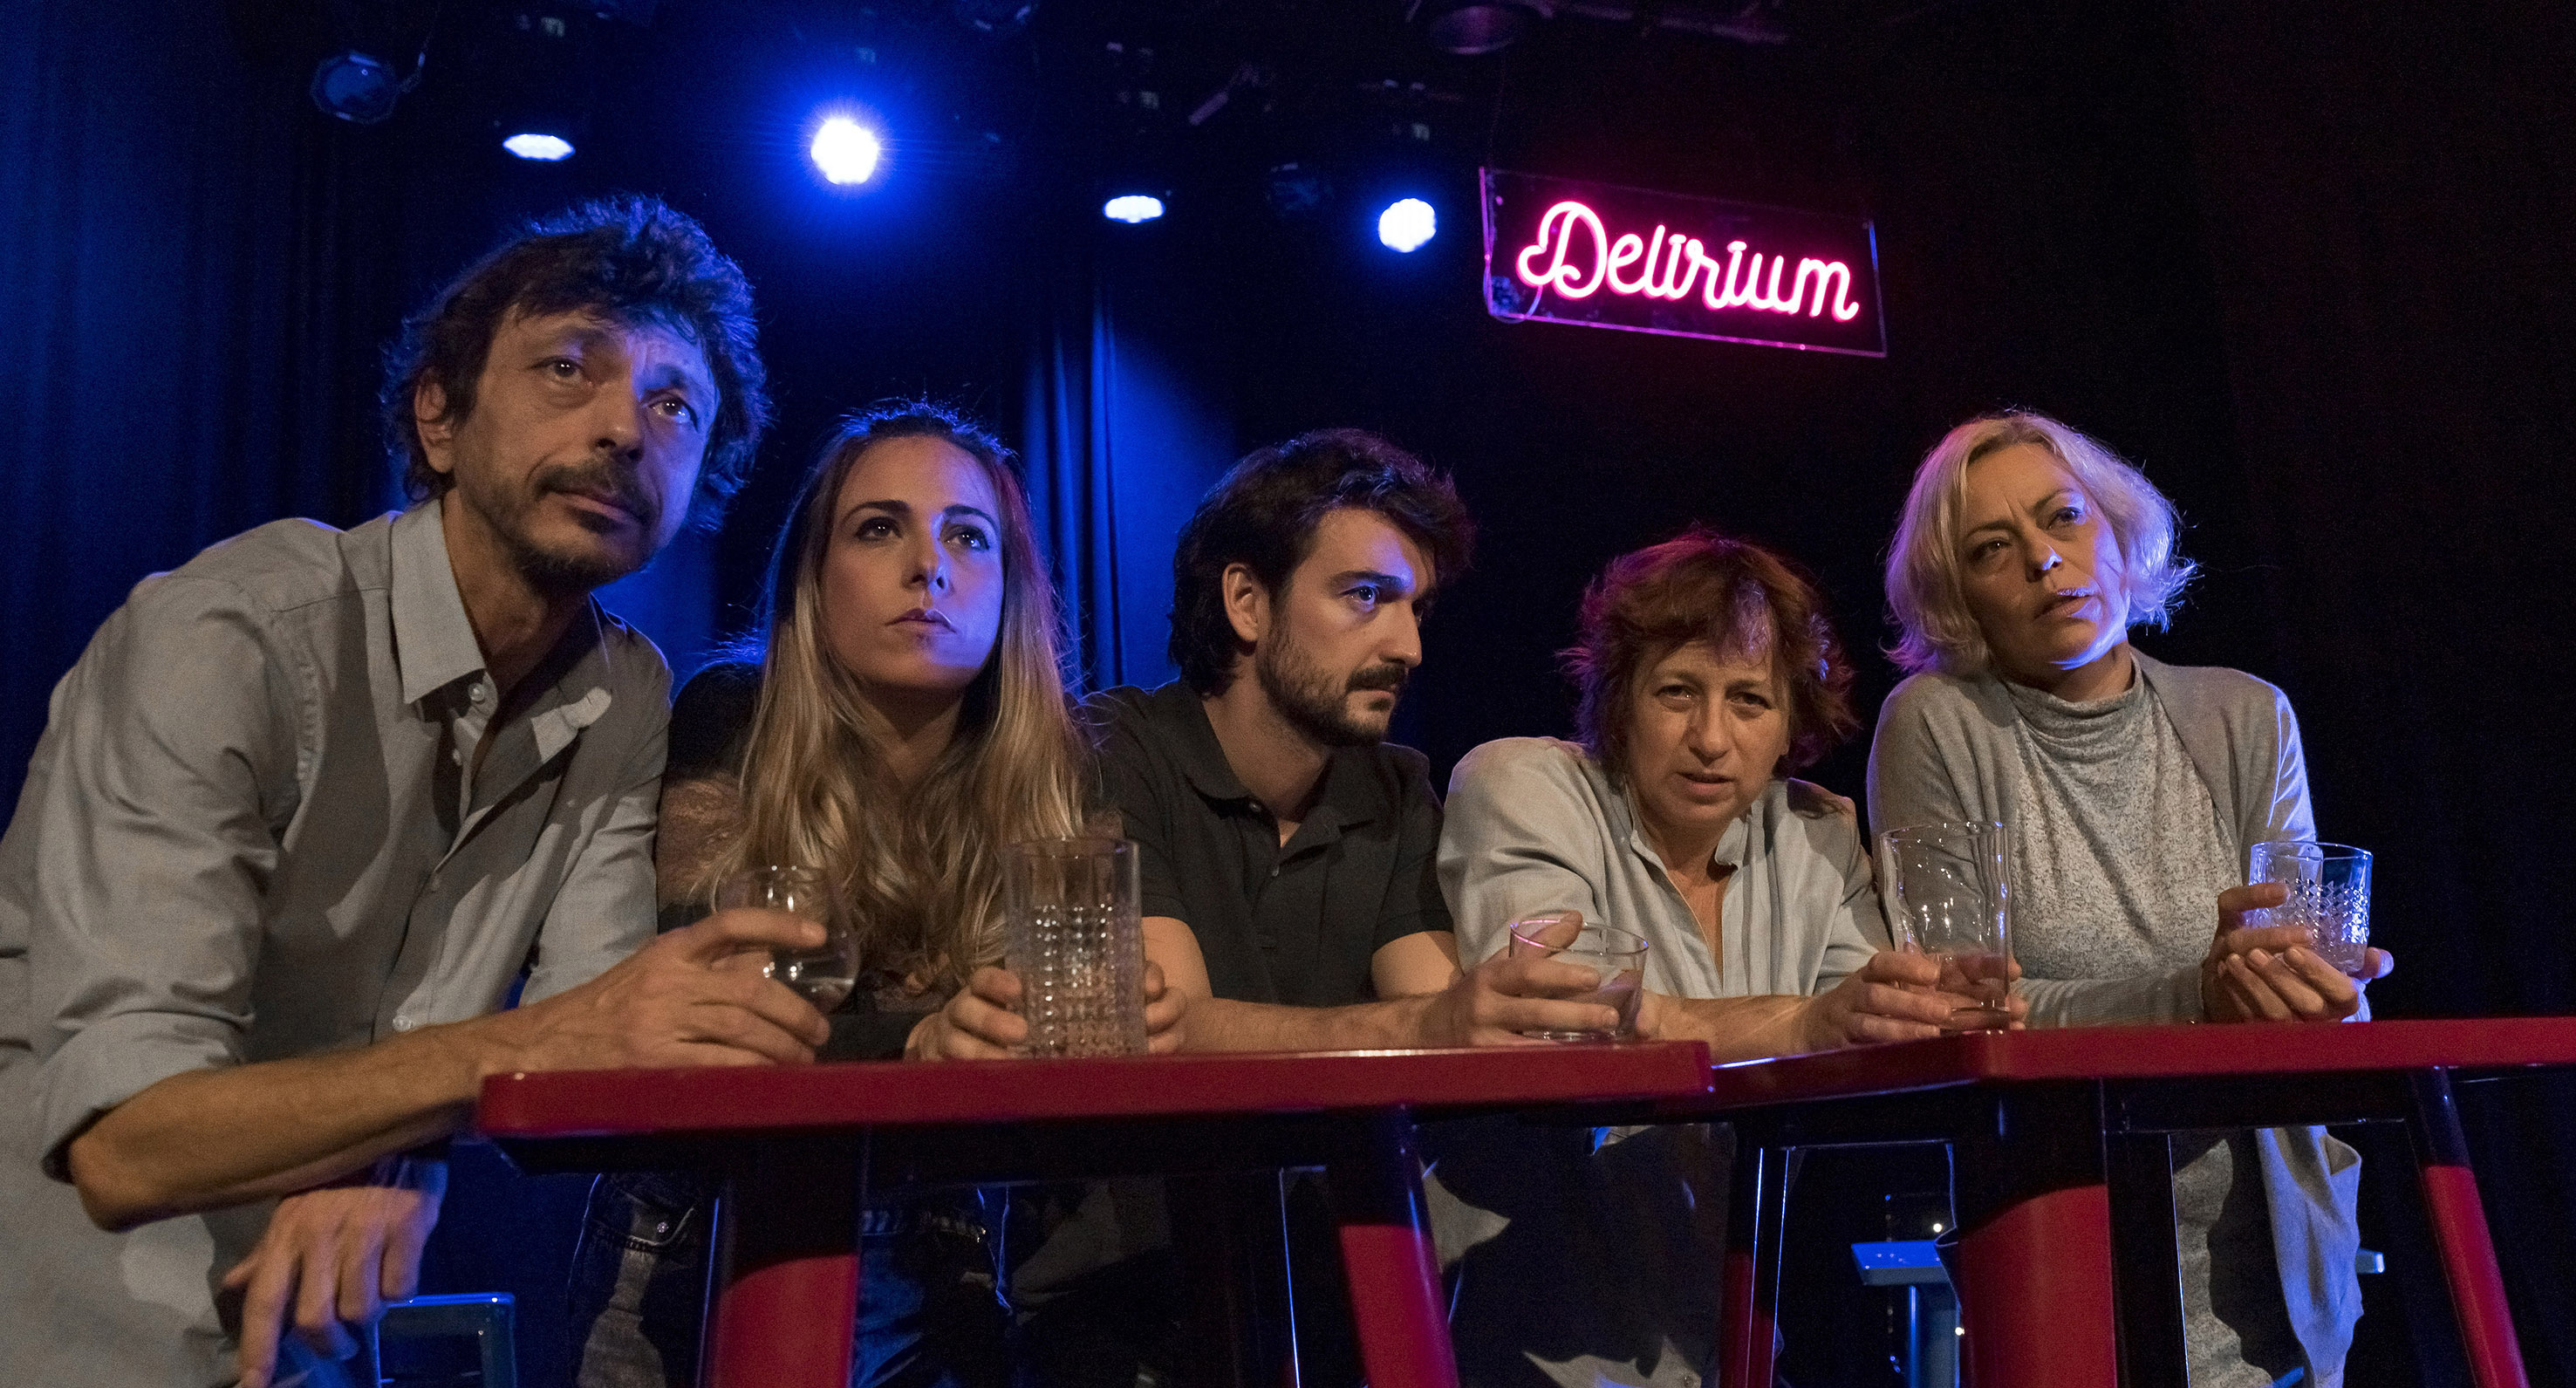 Teatro del Contrahecho encara el alcoholismo en la tragicomedia social “Delirium”